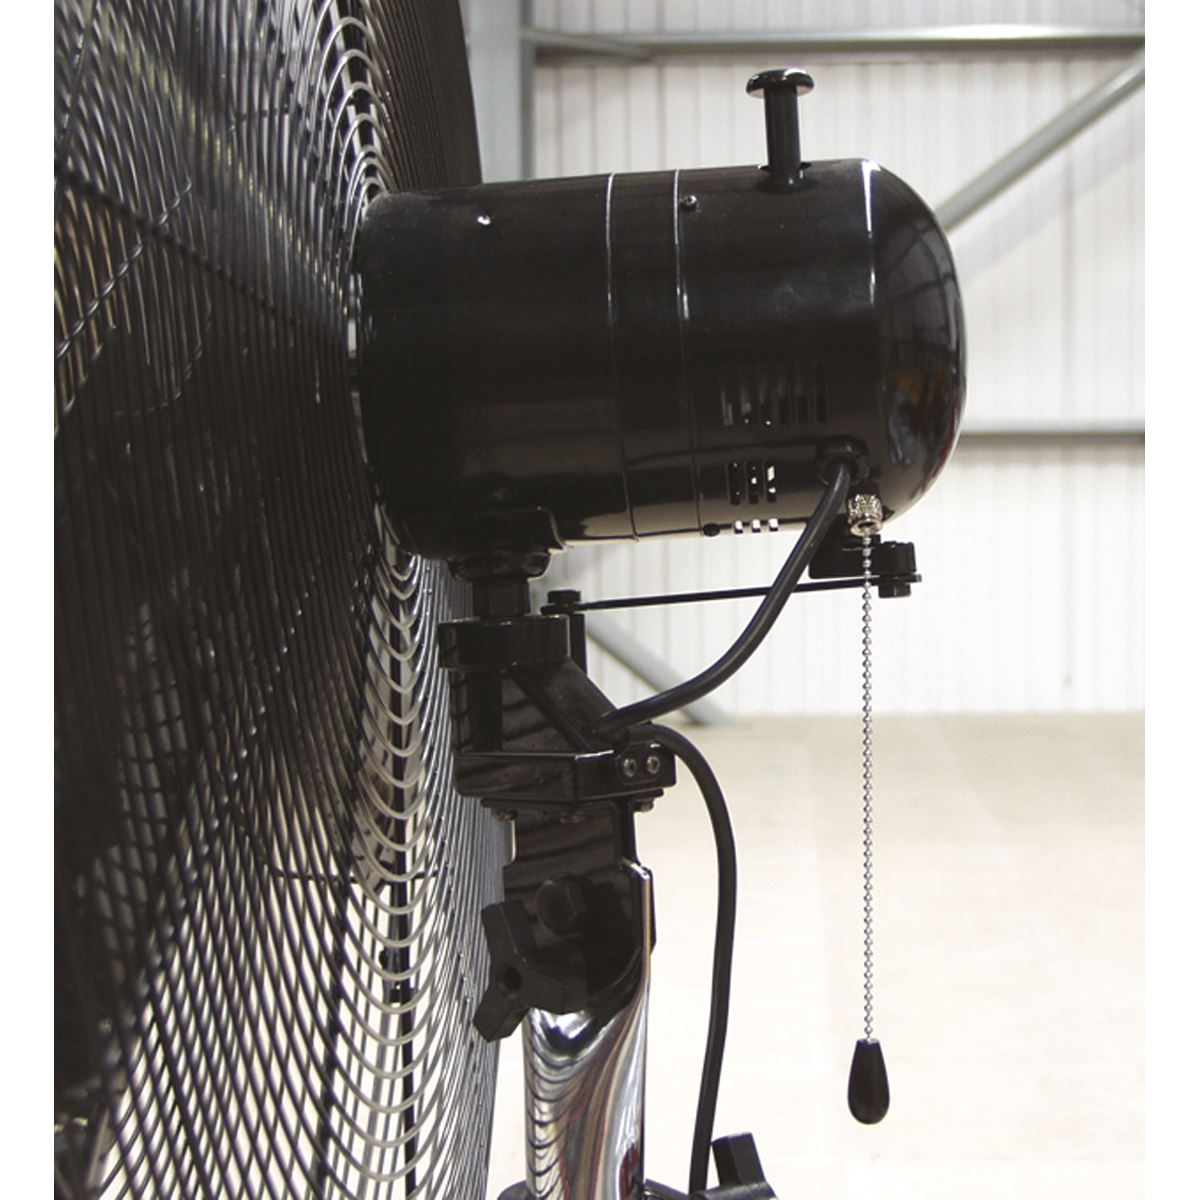 Sealey Industrial High Velocity Oscillating Pedestal Fan 30" 230V